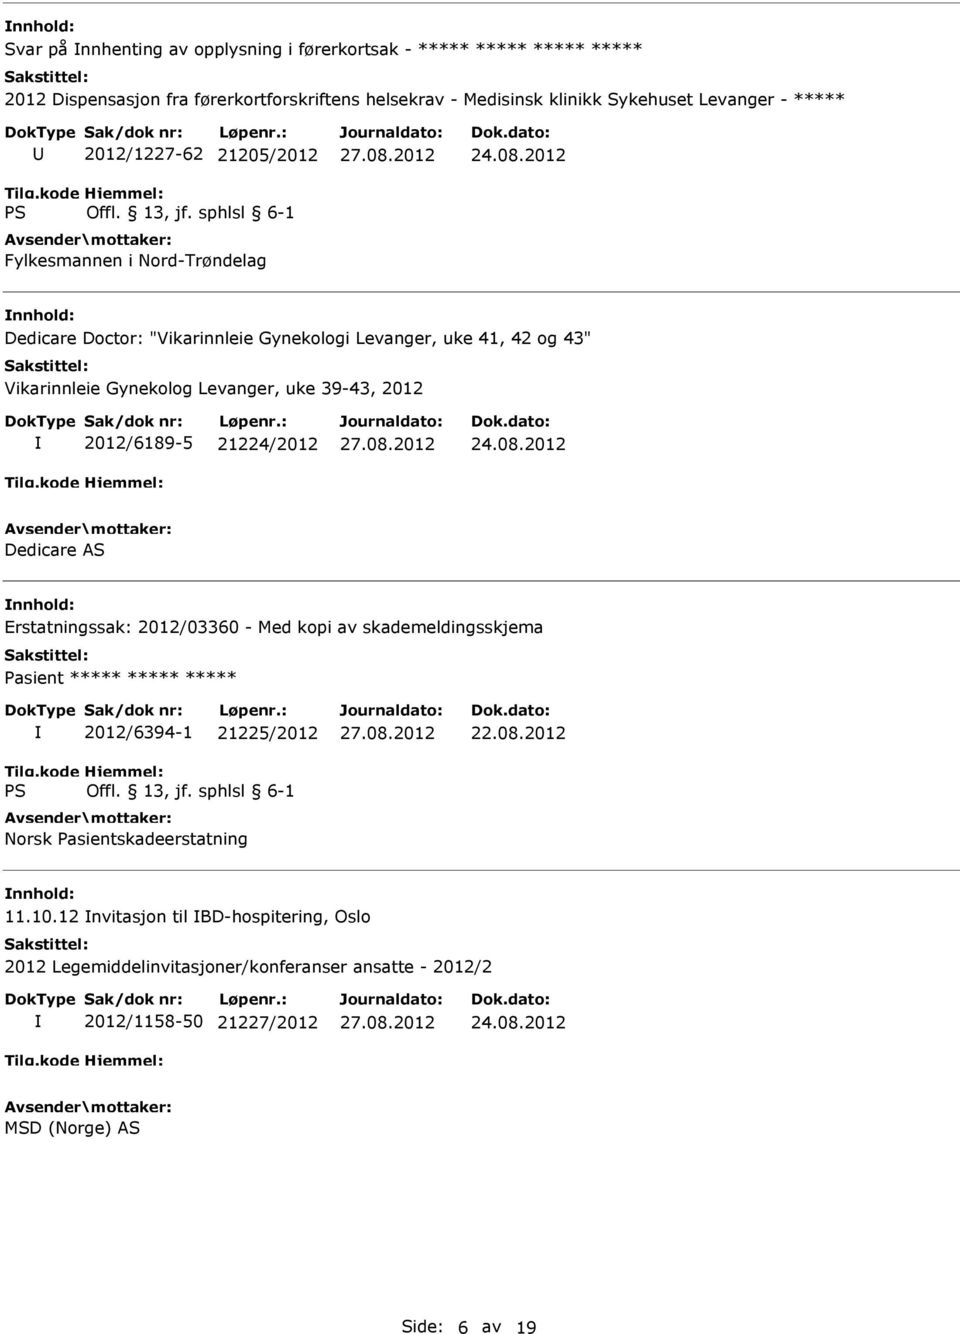 2012 Dedicare Doctor: "Vikarinnleie Gynekologi Levanger, uke 41, 42 og 43" Vikarinnleie Gynekolog Levanger, uke 39-43, 2012 2012/6189-5 21224/2012 24.08.